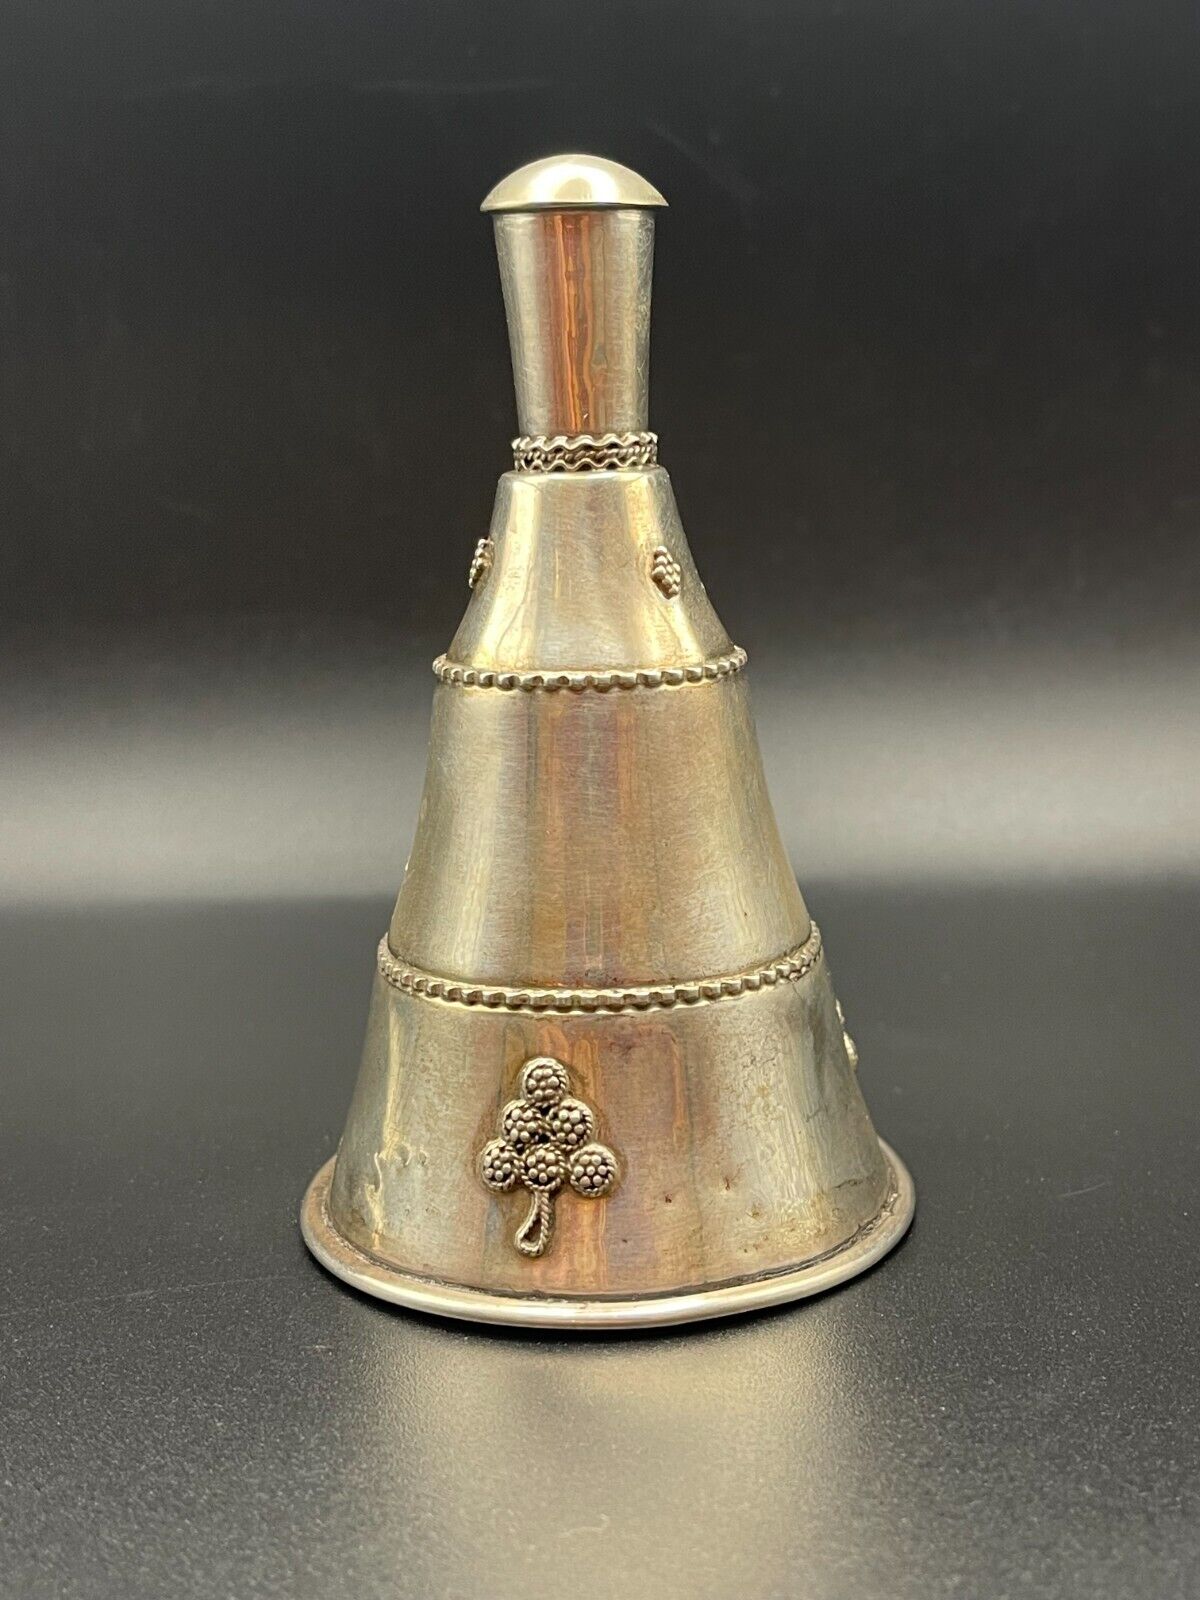 Vintage Australian Sterling Silver Bell: Timeless Elegance and Craftsmanship